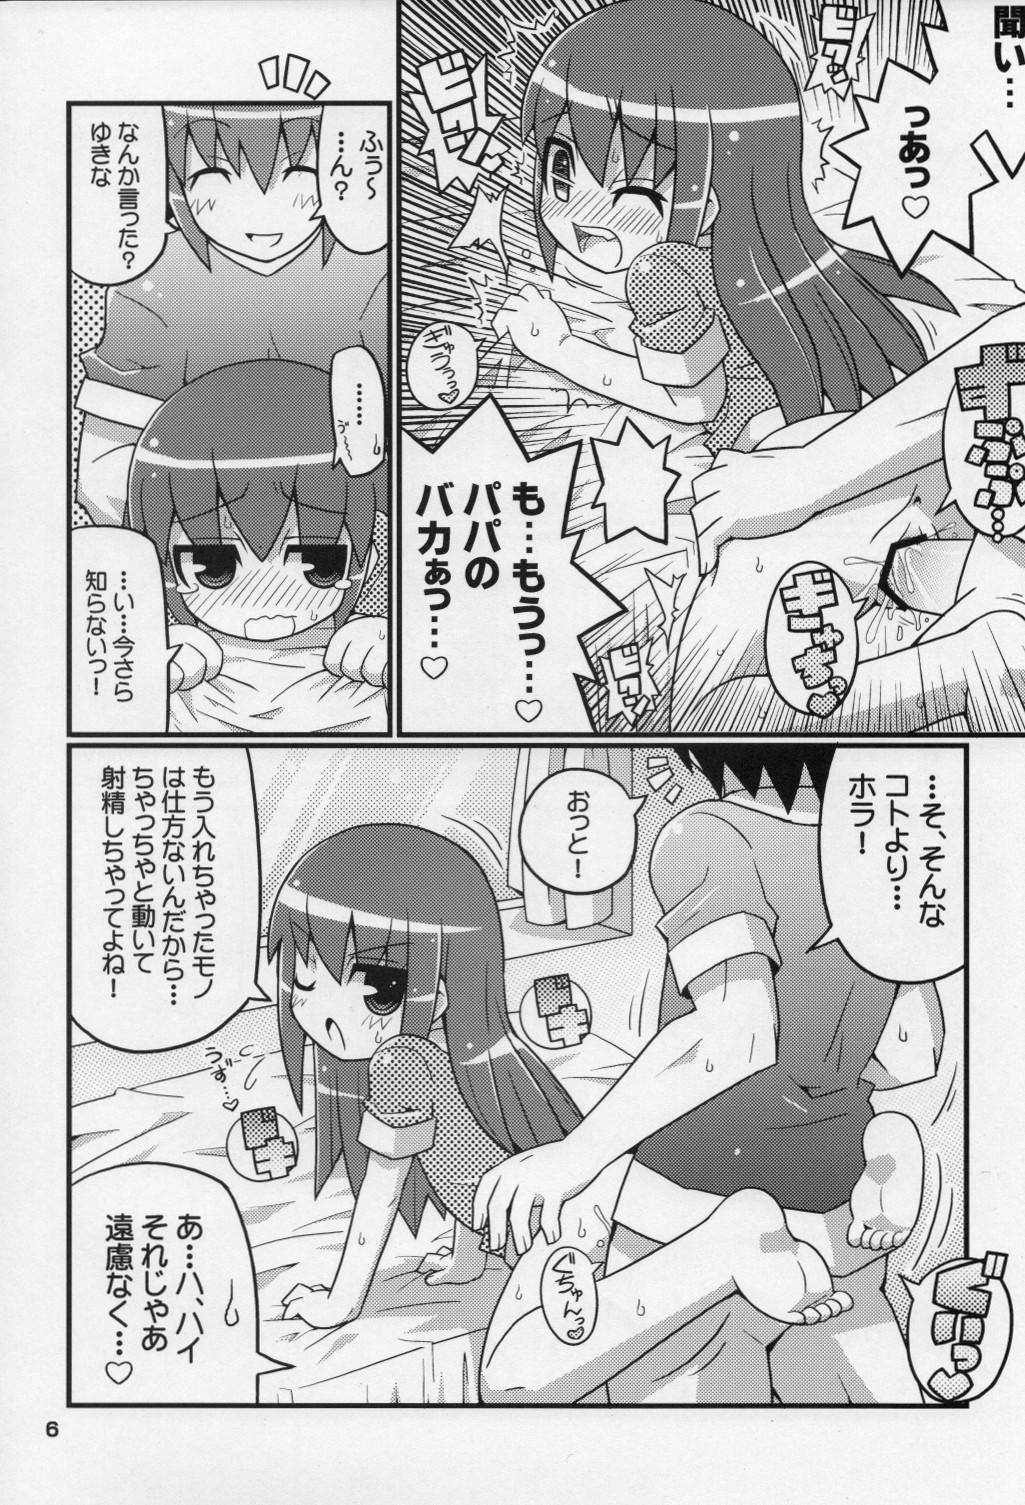 Spanking Sukisuki Okosama Style 6 Cachonda - Page 7